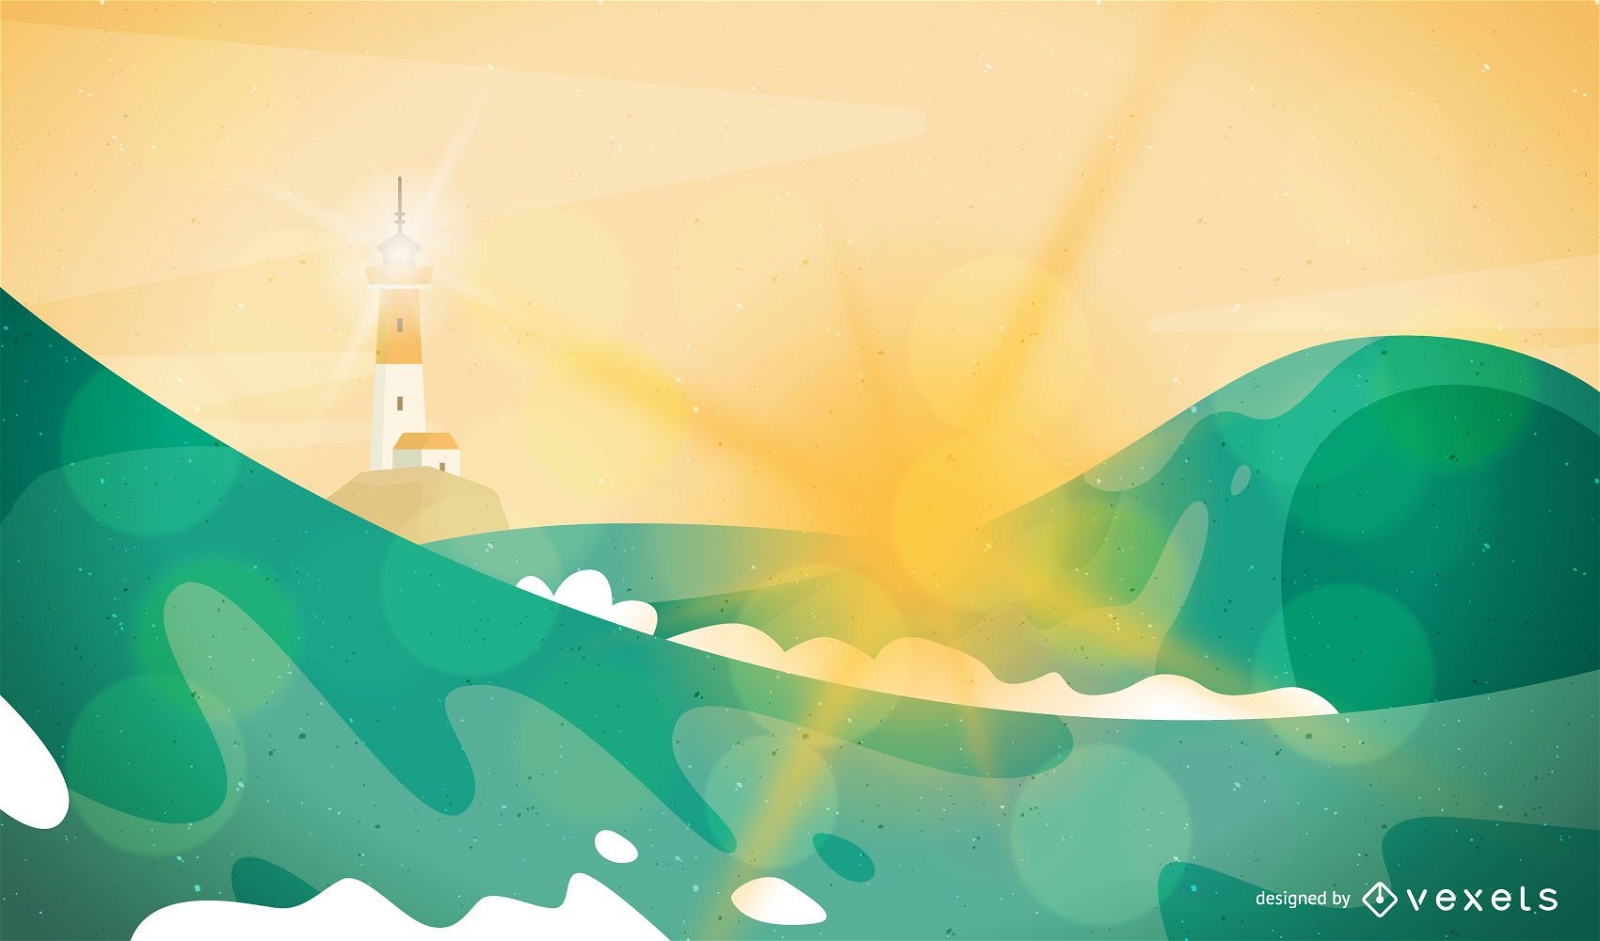 Waves and lighthouse landscape illustration